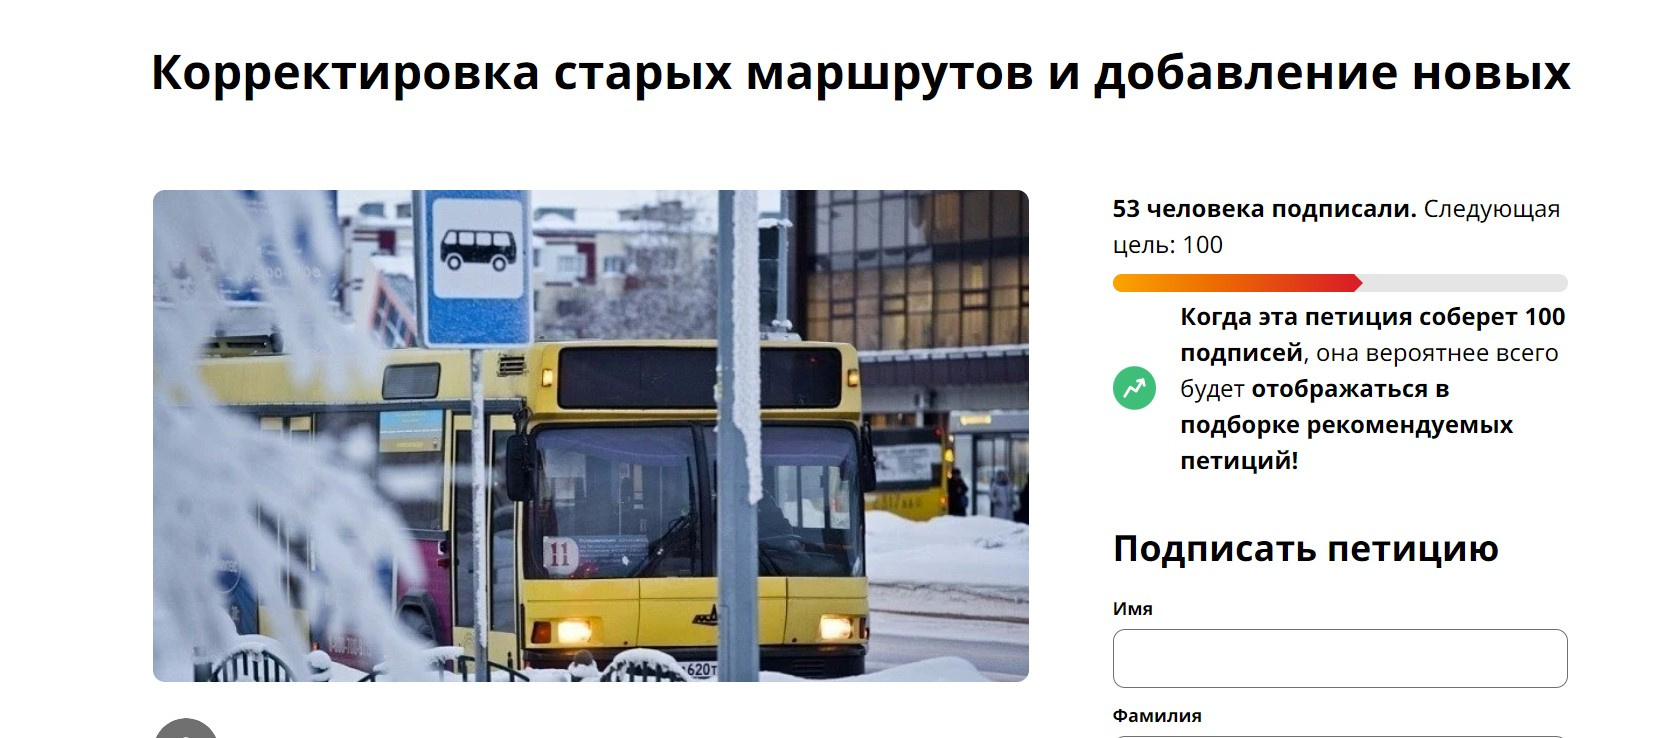 Сургутяне могут подписать петицию против внедрения новой транспортной схемы